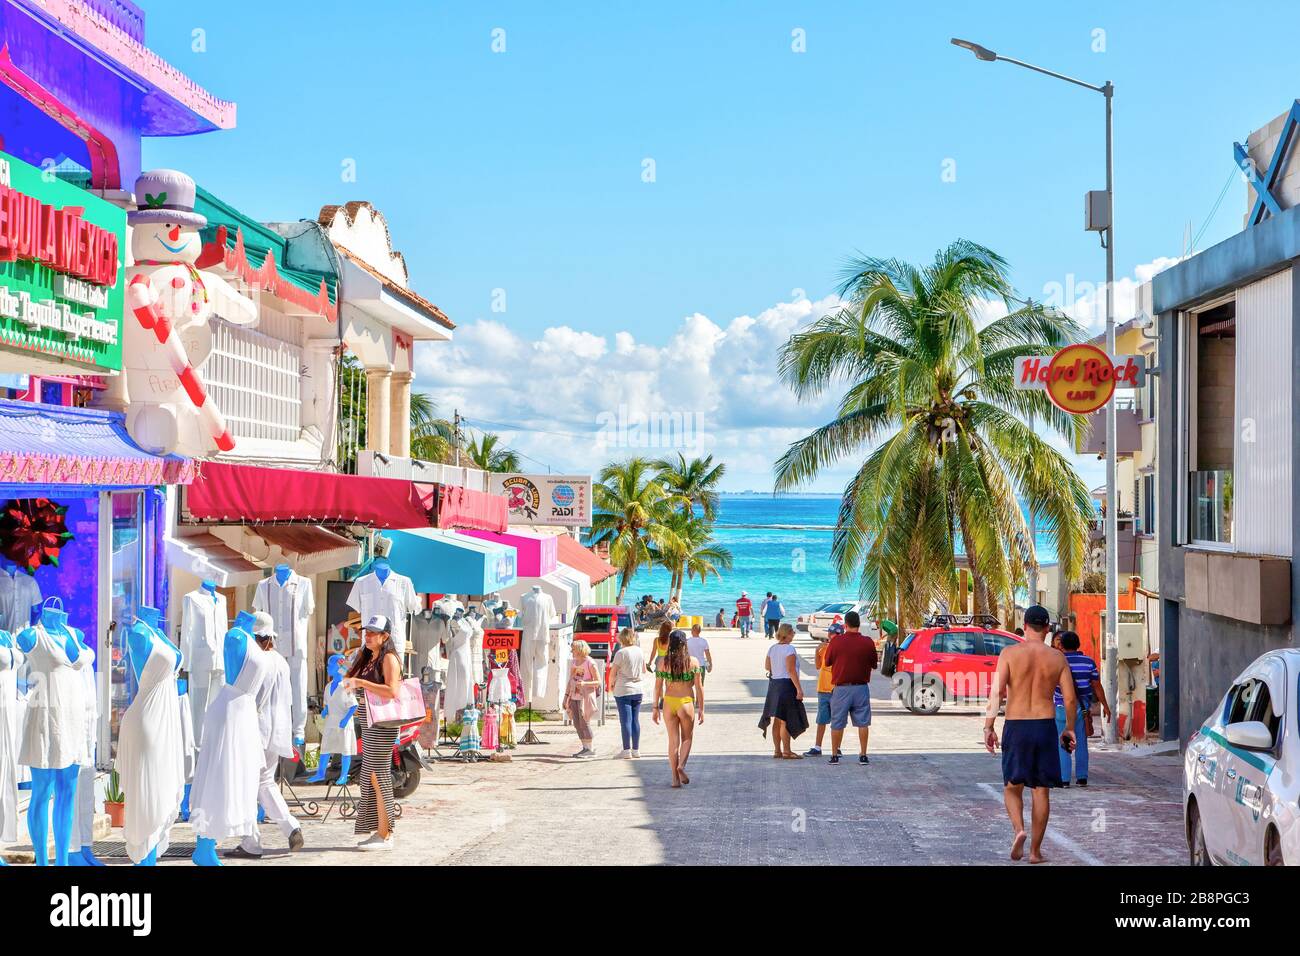 PLAYA DEL CARMEN, MEXIQUE - DEC. 26, 2019: Les visiteurs aiment faire du shopping dans le célèbre quartier des divertissements de la plage Playa del Carmen dans les penins du Yucatan Banque D'Images